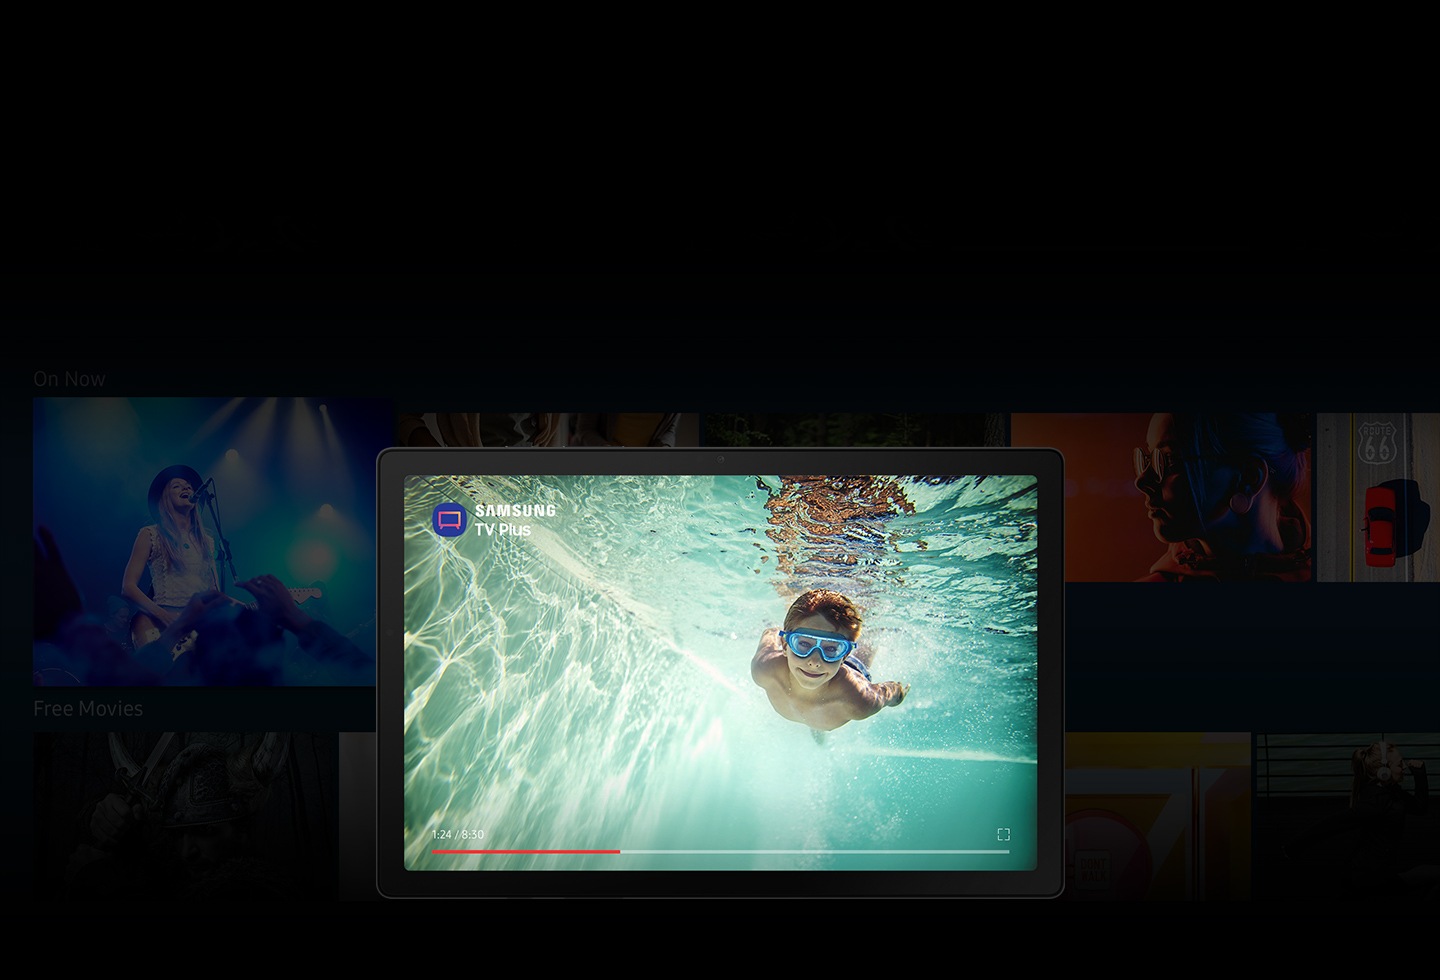 Приложение Samsung TV Plus открыто на Galaxy Tab A8. На фоне многочисленных размытых изображений из телепередач и фильмов на экране изображен мальчик, плывущий под водой.